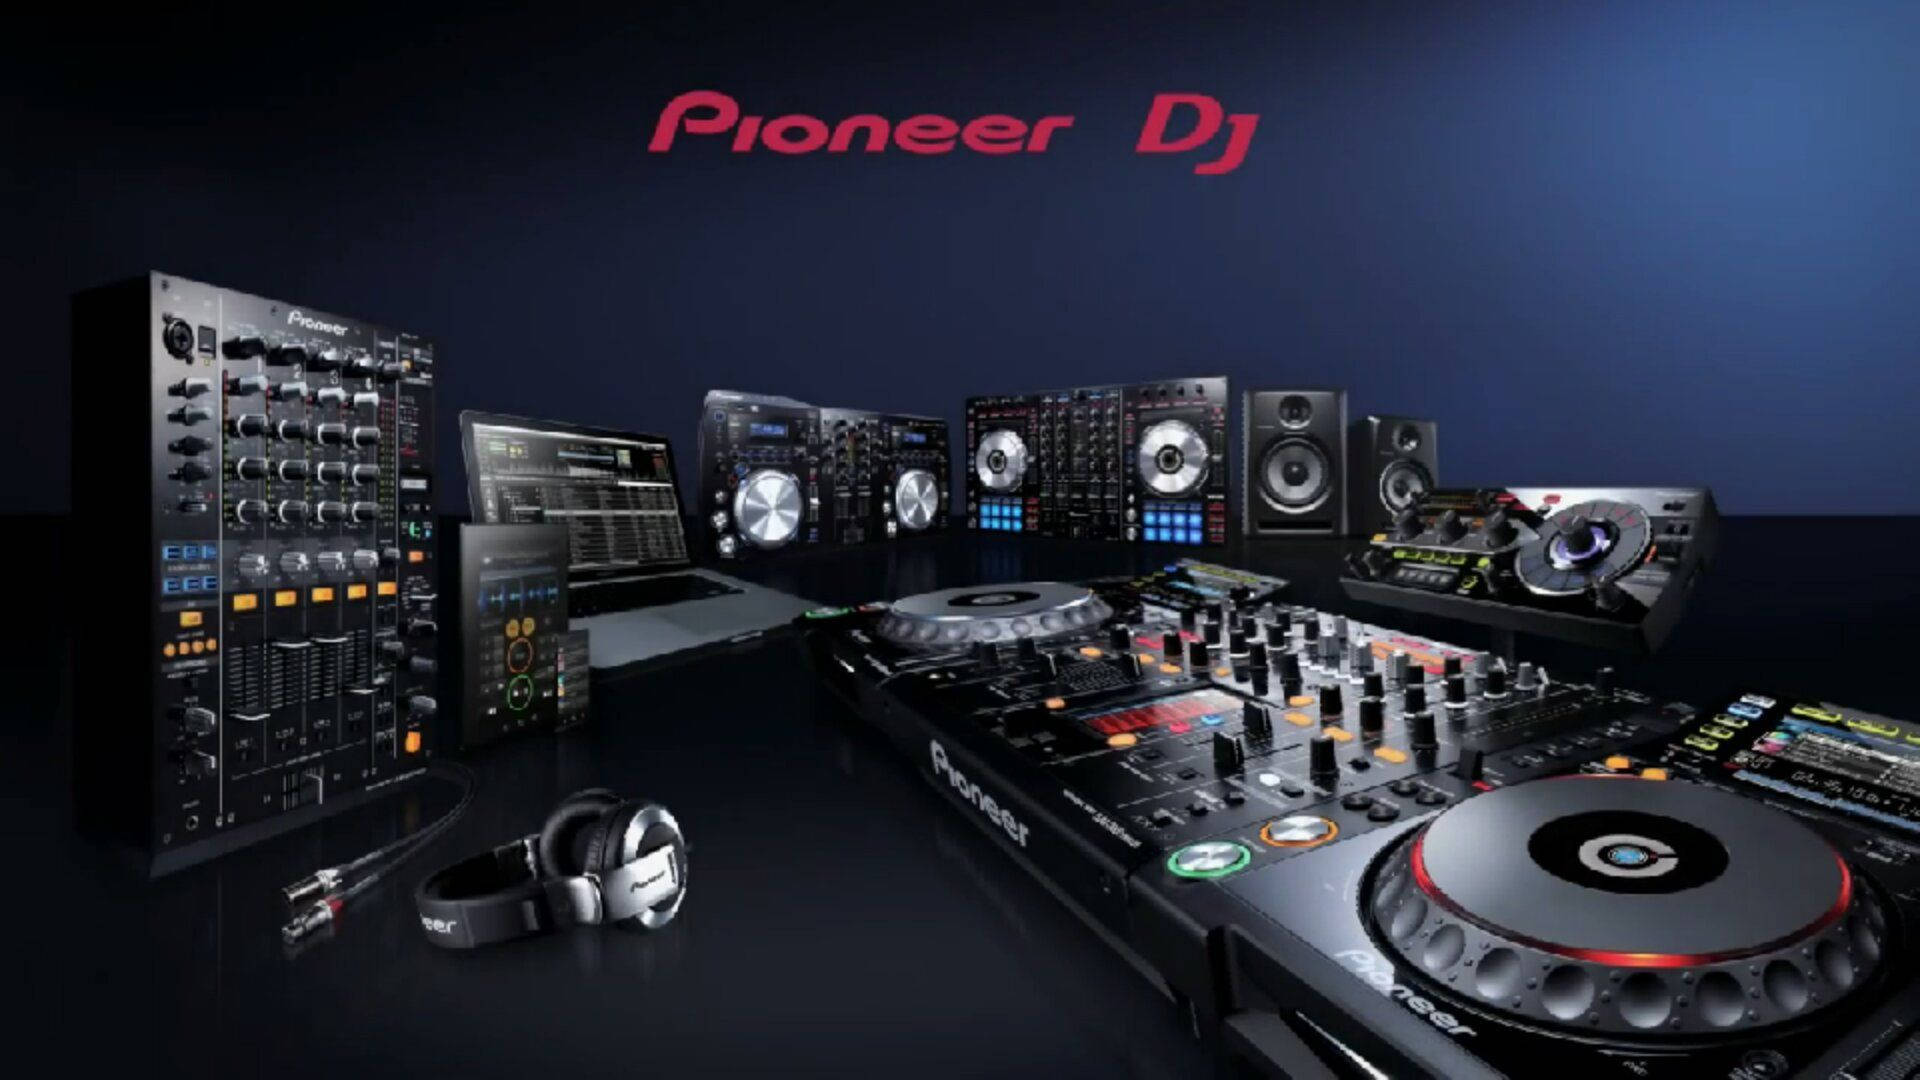 Pioneer Dj Mixer Equipment Background